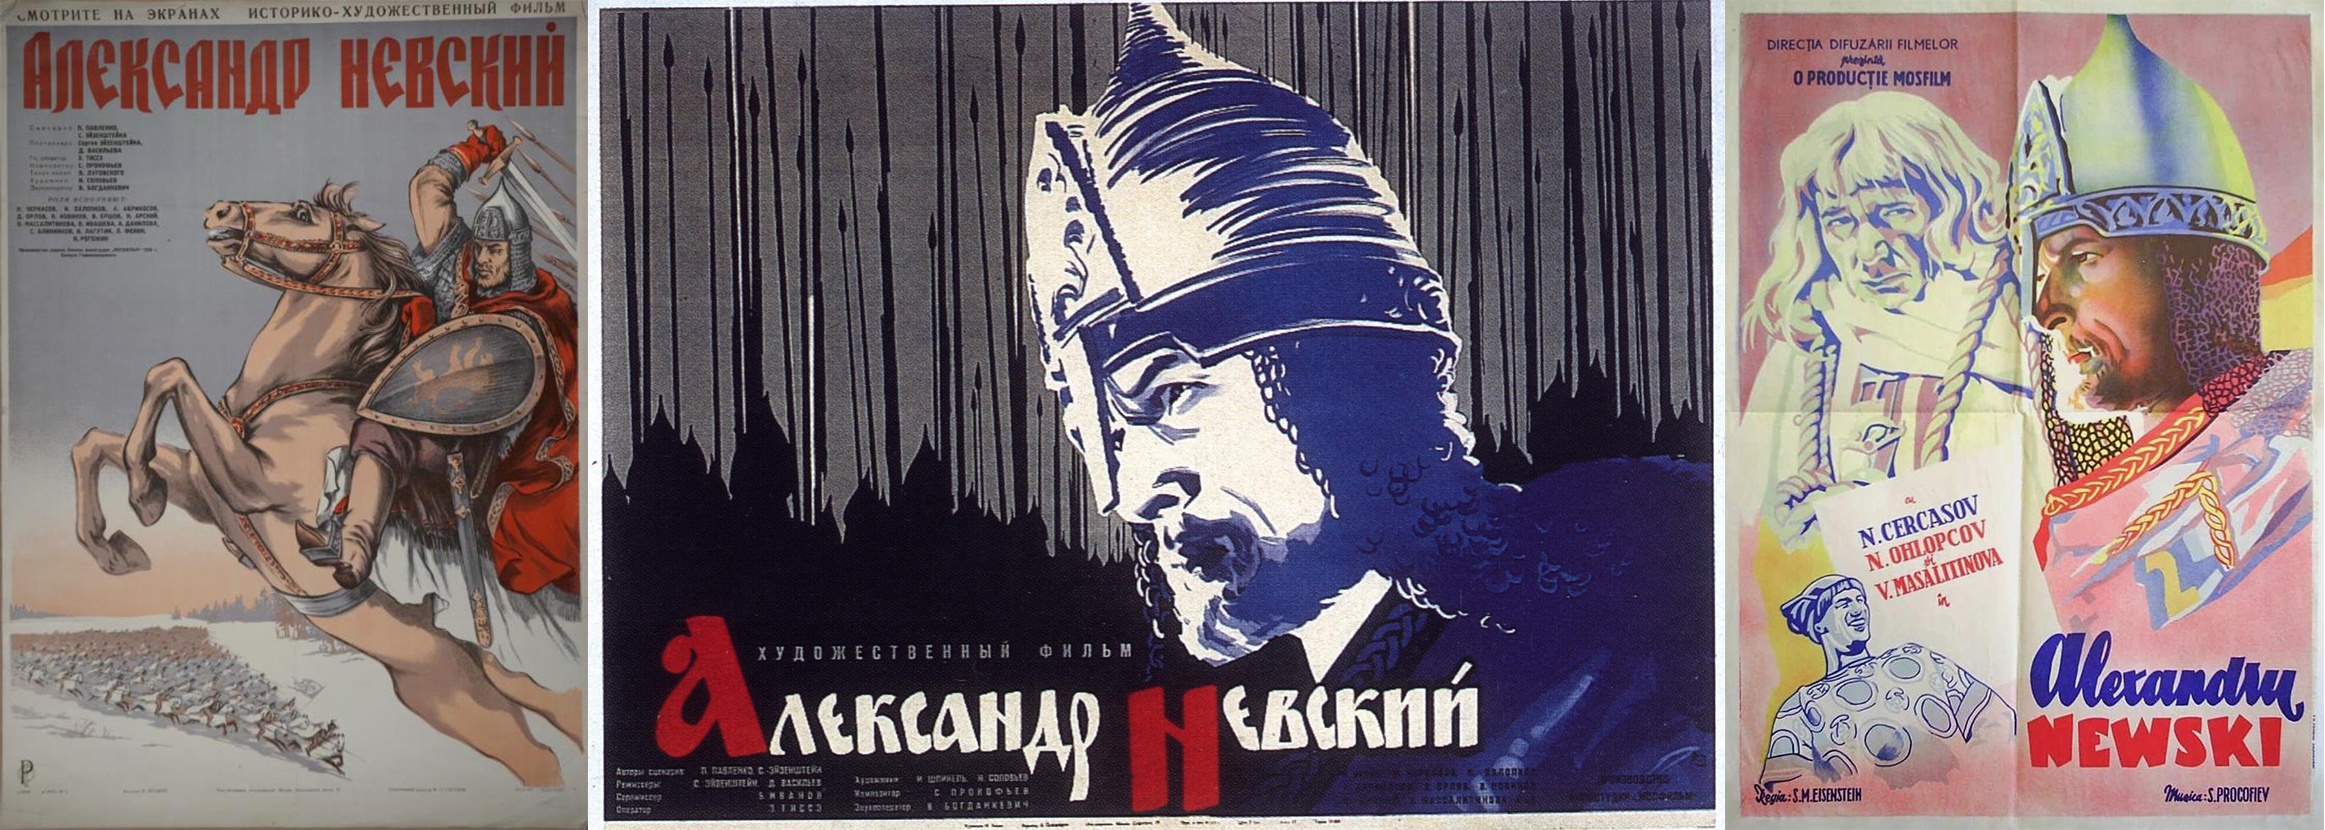 Постеры фильма Александр Невский